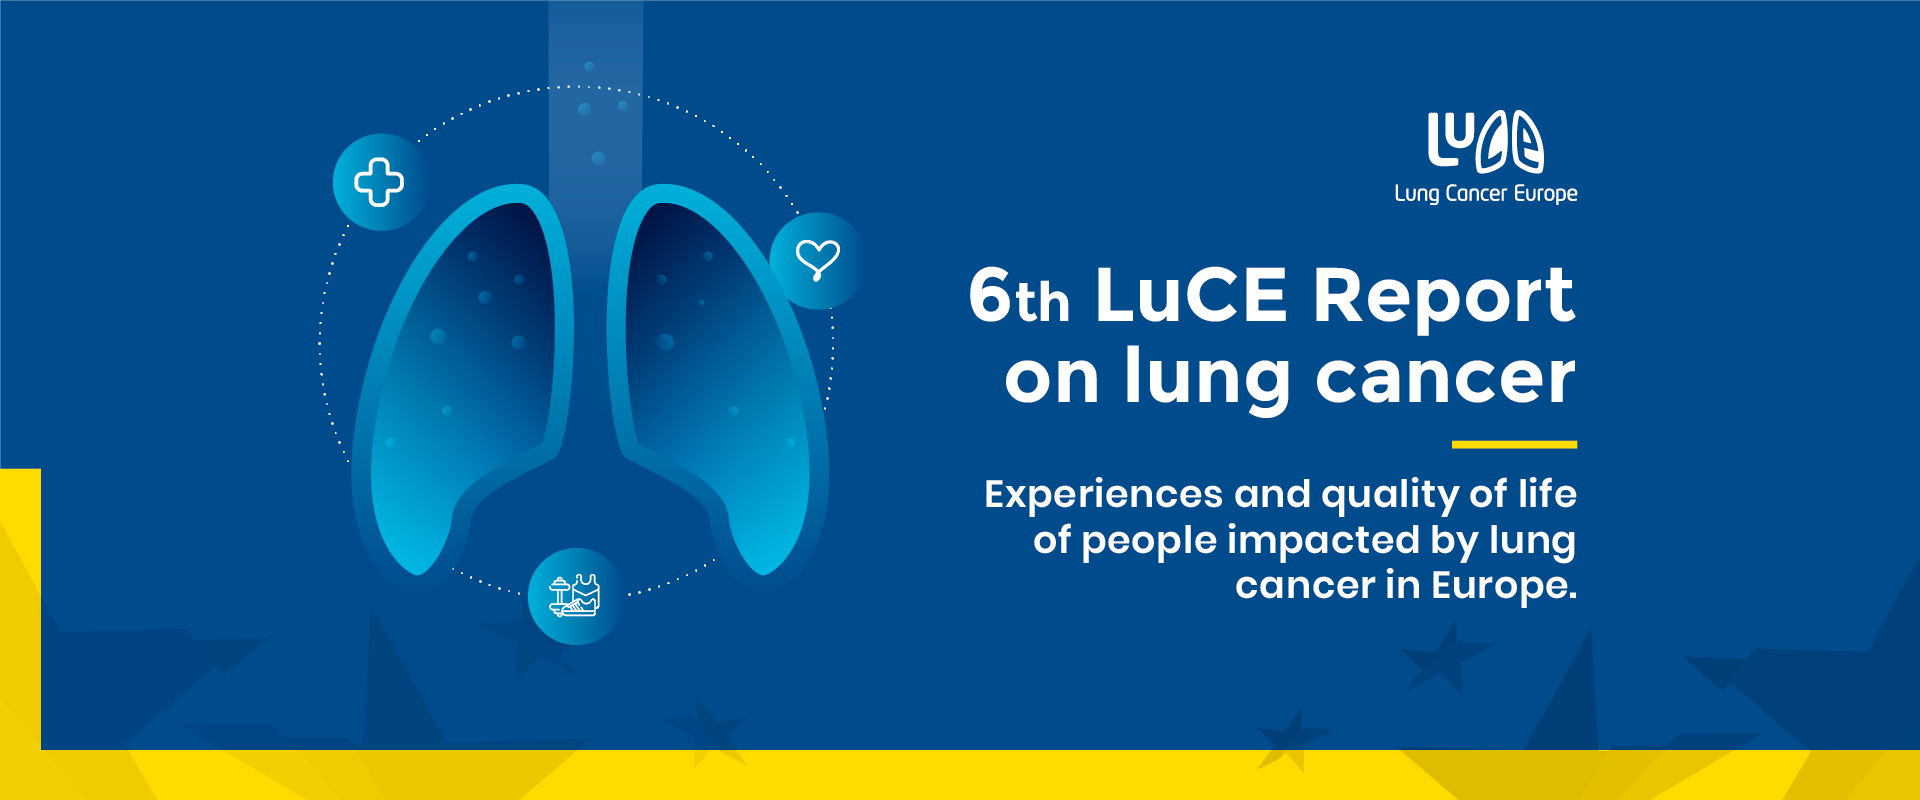 “Εμπειρίες και ποιότητα ζωής των ατόμων που έχουν διαγνωστεί με καρκίνο του πνεύμονα στην Ευρώπη”